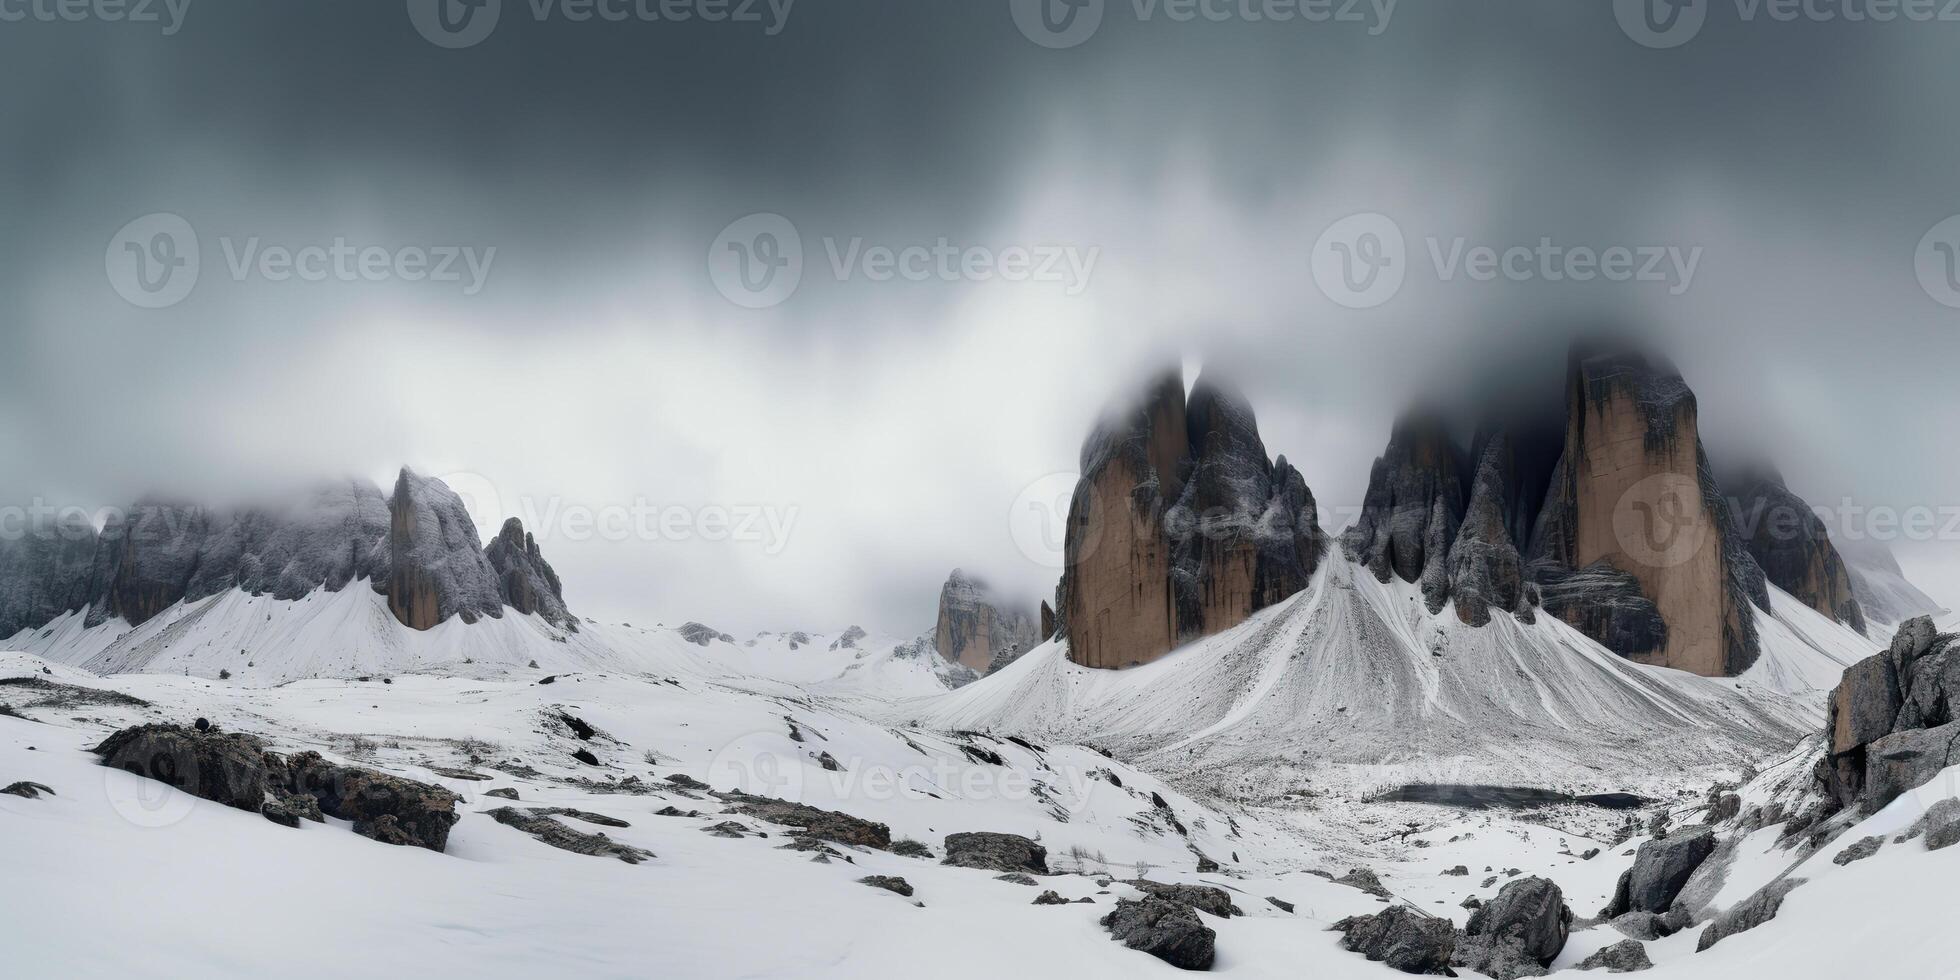 nube día rock colina montaña rock pico con nieve a invierno. aventuras expedición viaje excursionismo escena ver foto